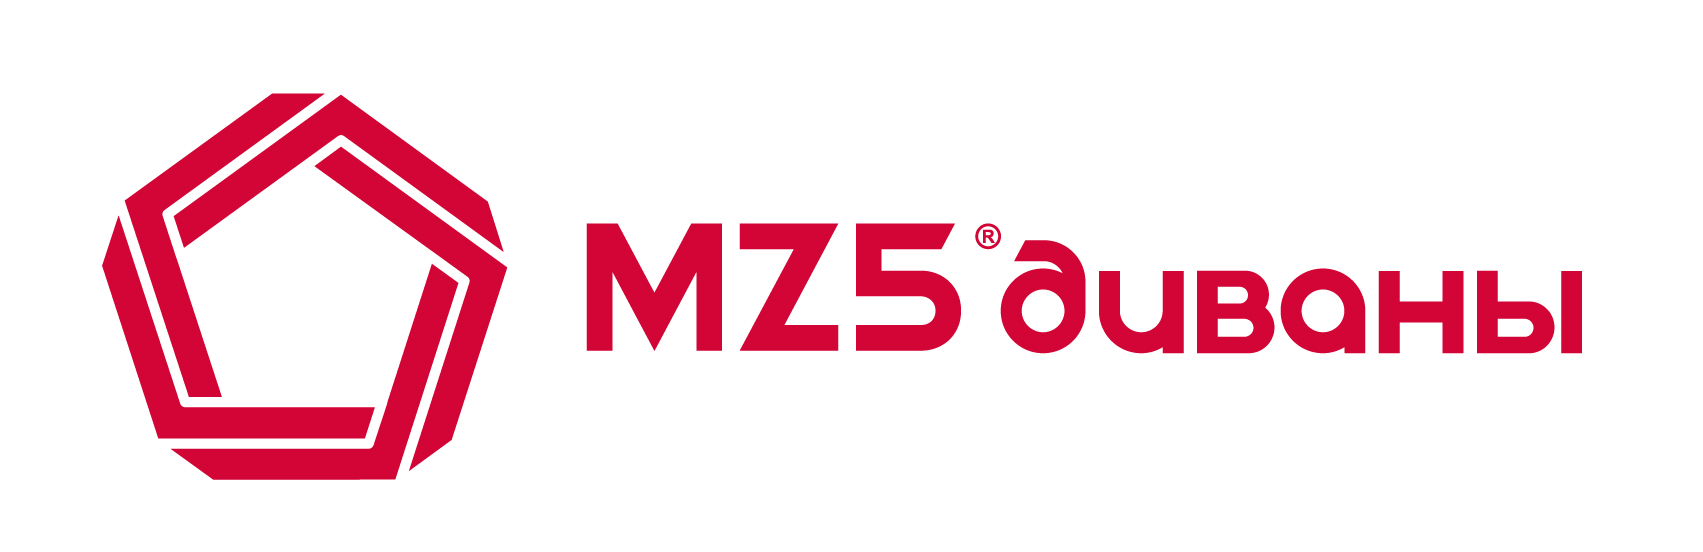 Mz5